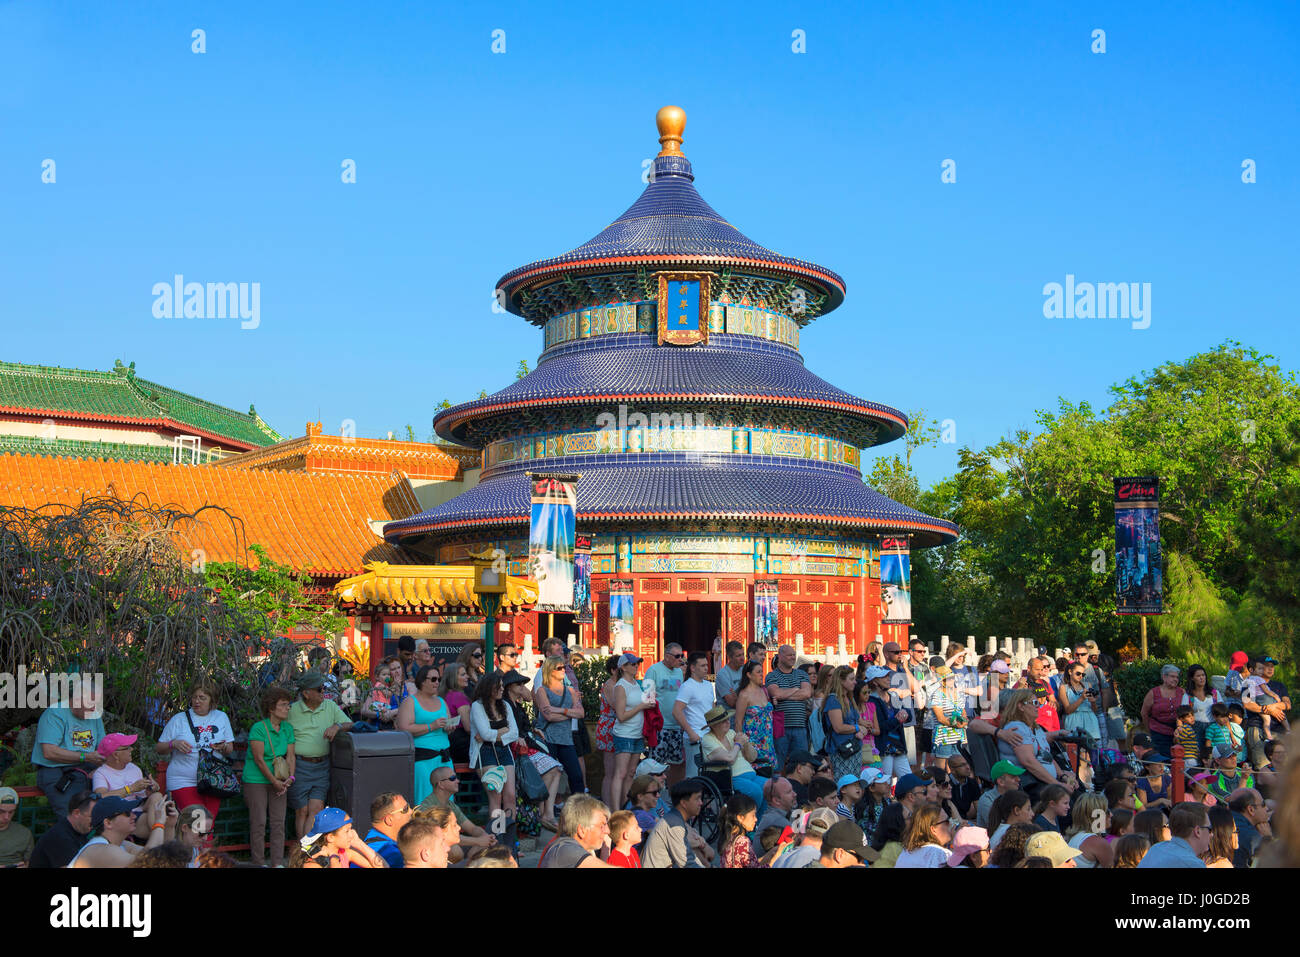 Pavillon de la Chine, Epcot, Disney World, Orlando, Floride Banque D'Images